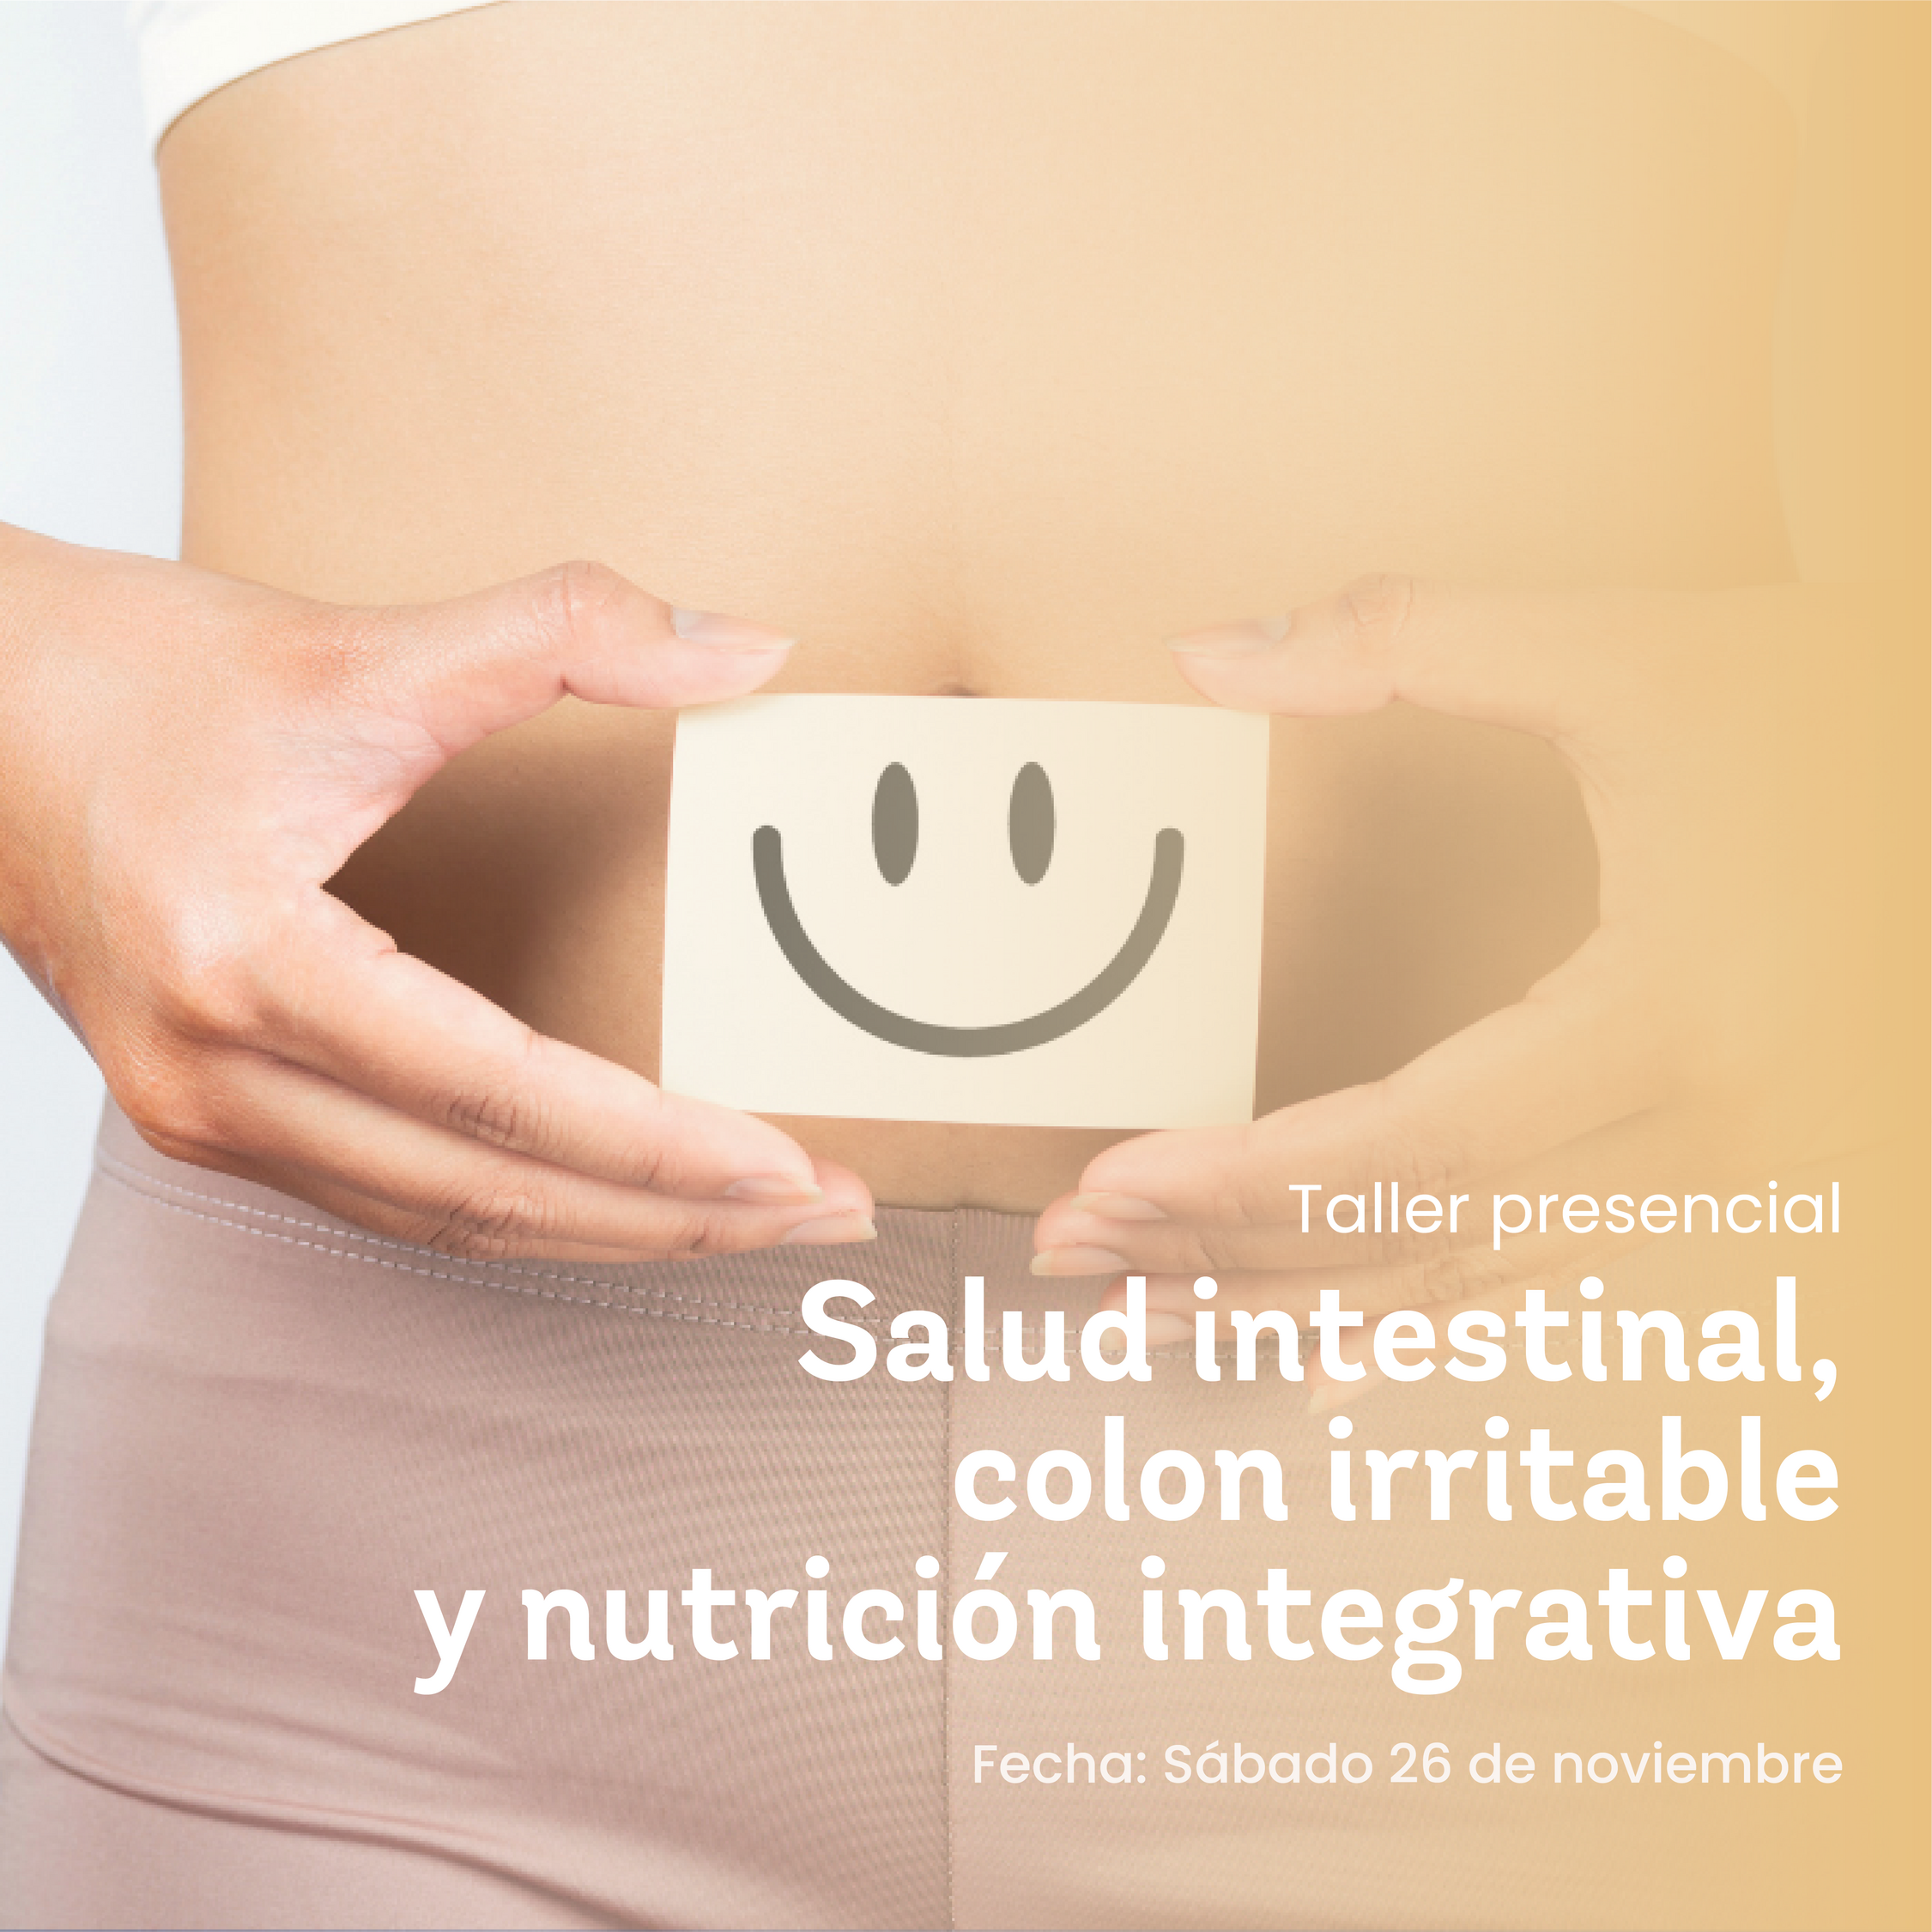 Salud intestinal, colon irritable y nutrición integrativa